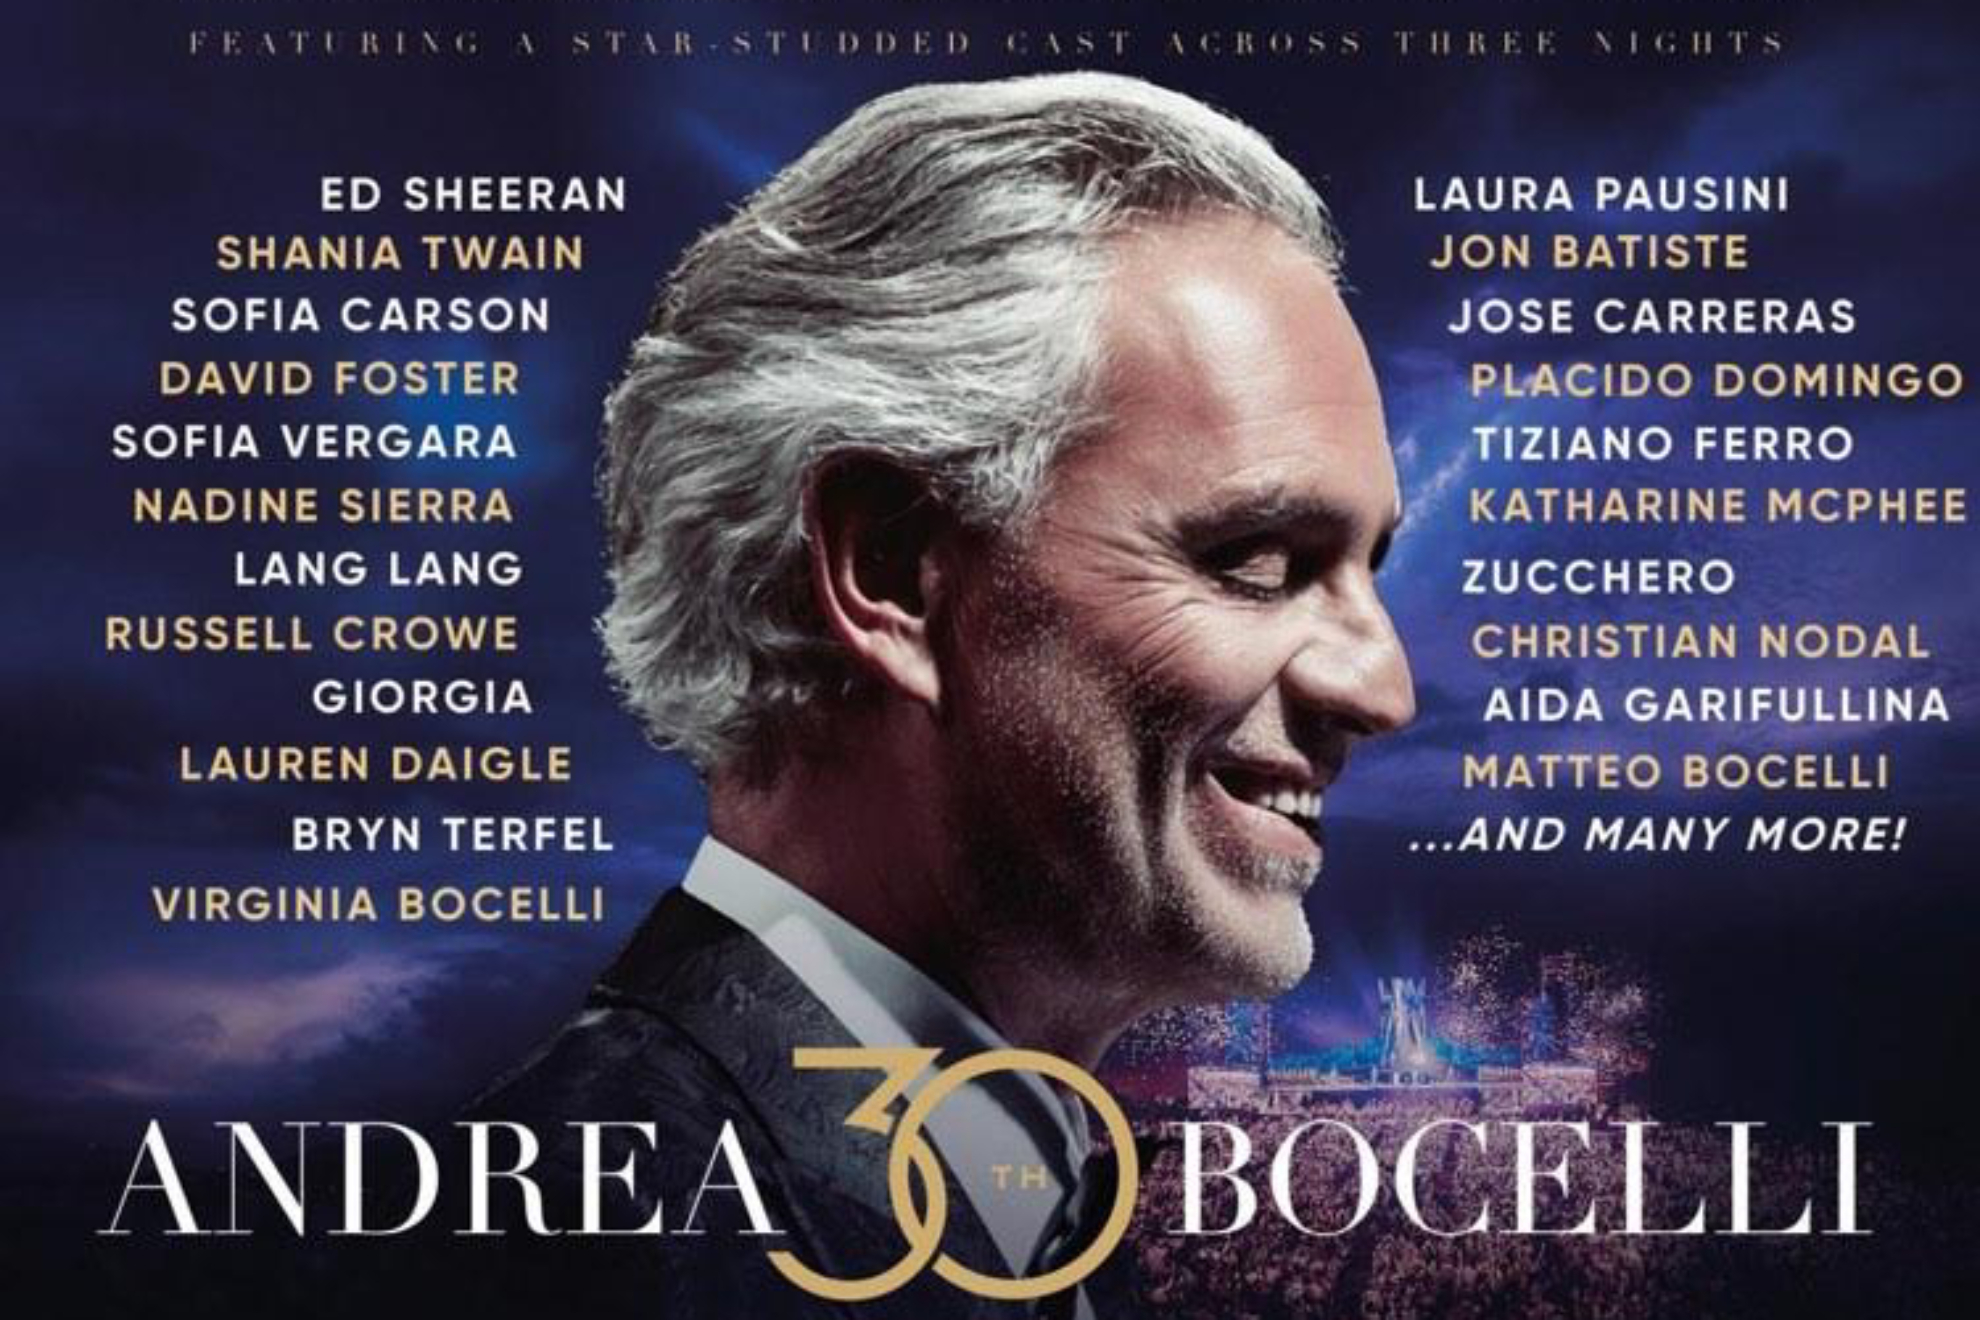 CHristian Nodal el nico distinguido de Mxico y Latinoamrica para acompaar a Andrea Bocelli